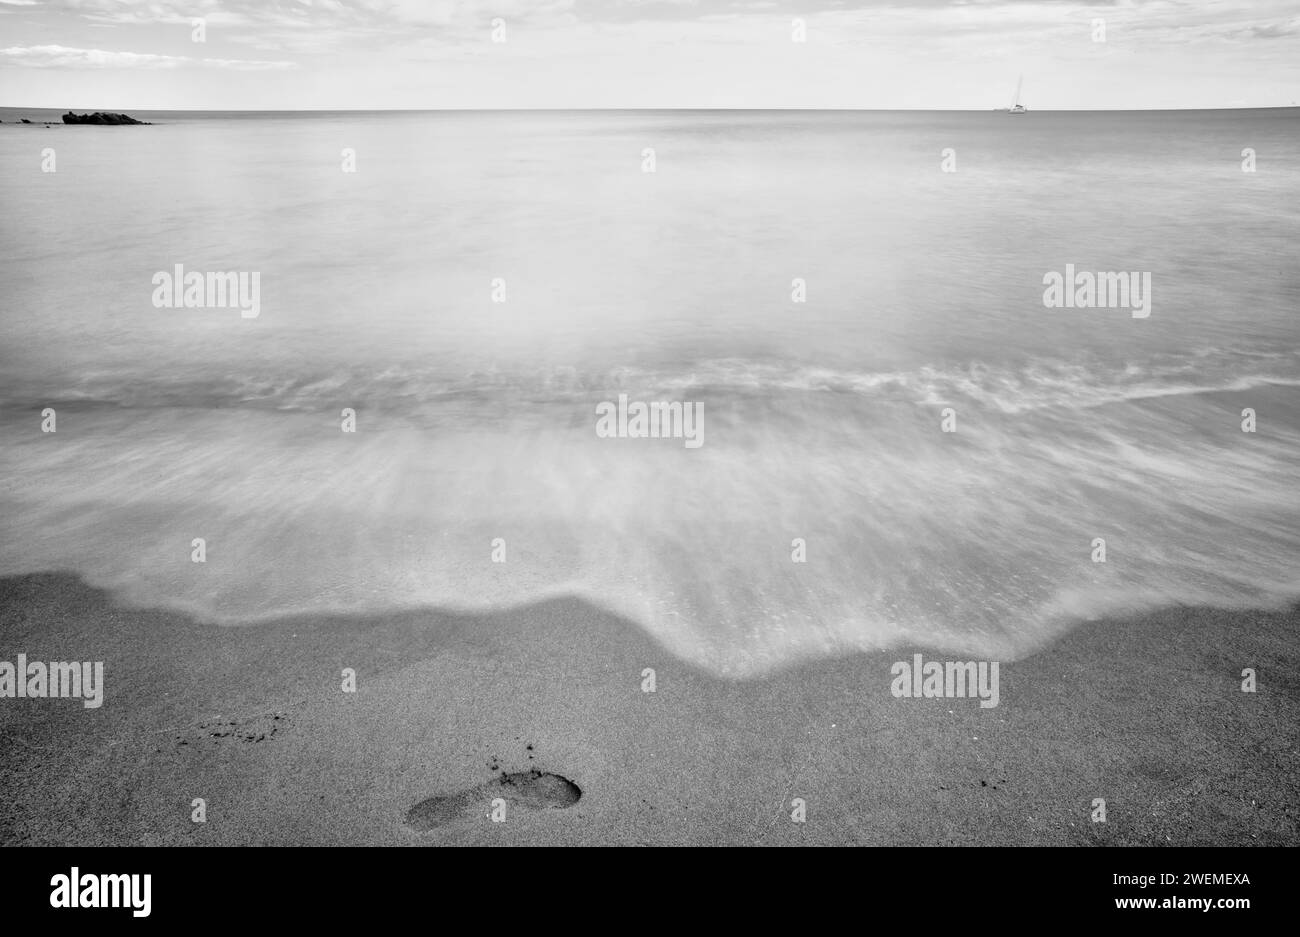 Serena esposizione bianca e nera di una tranquilla spiaggia sarda con una barca a vela all'orizzonte Foto Stock